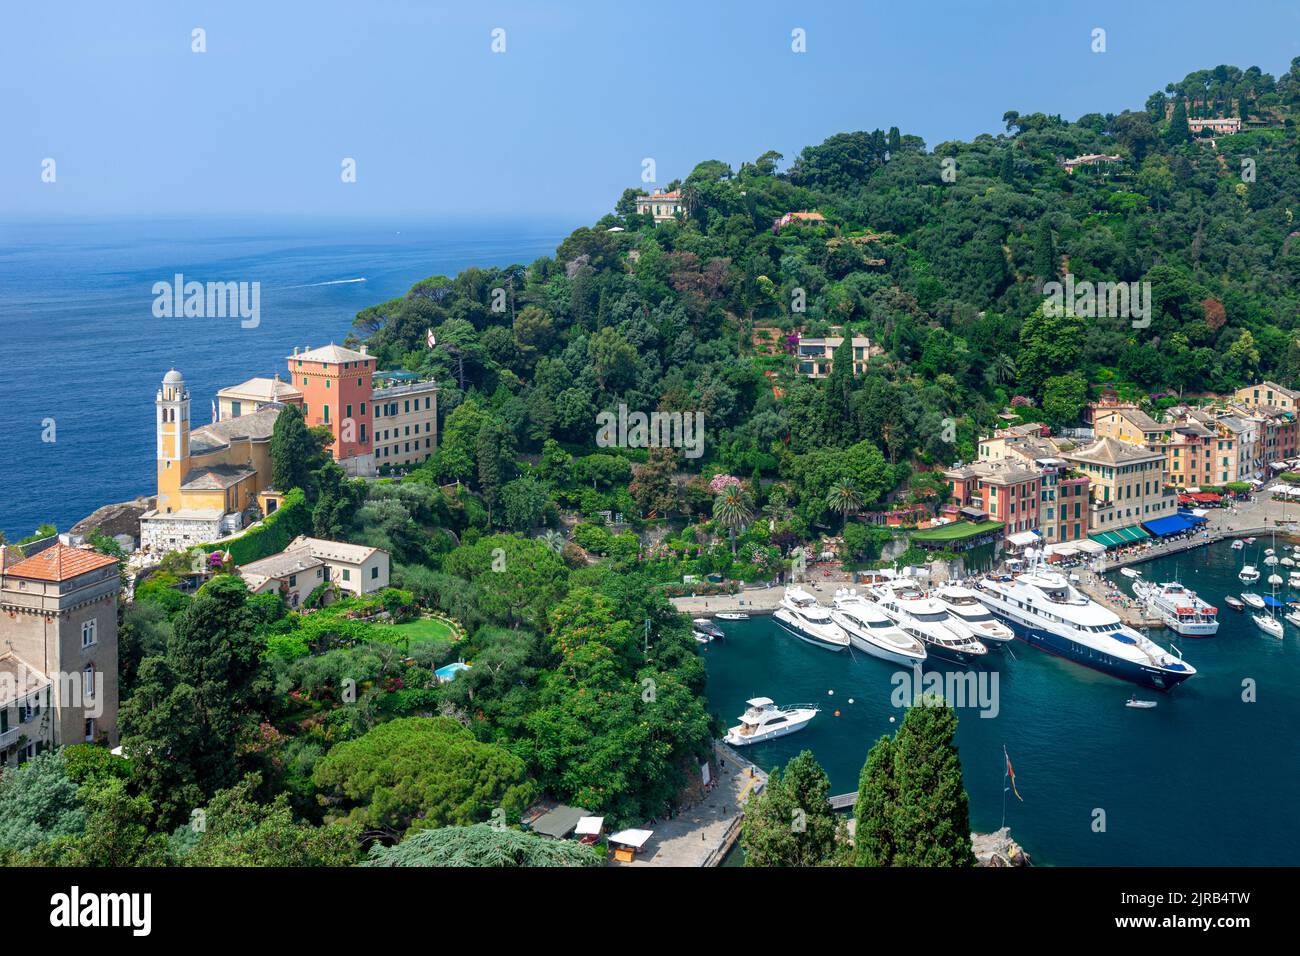 Chiesa San Giorgio, verde collina e barche di lusso ormeggiate nella piccola città portuale di Portofino, Liguria, Italia Foto Stock